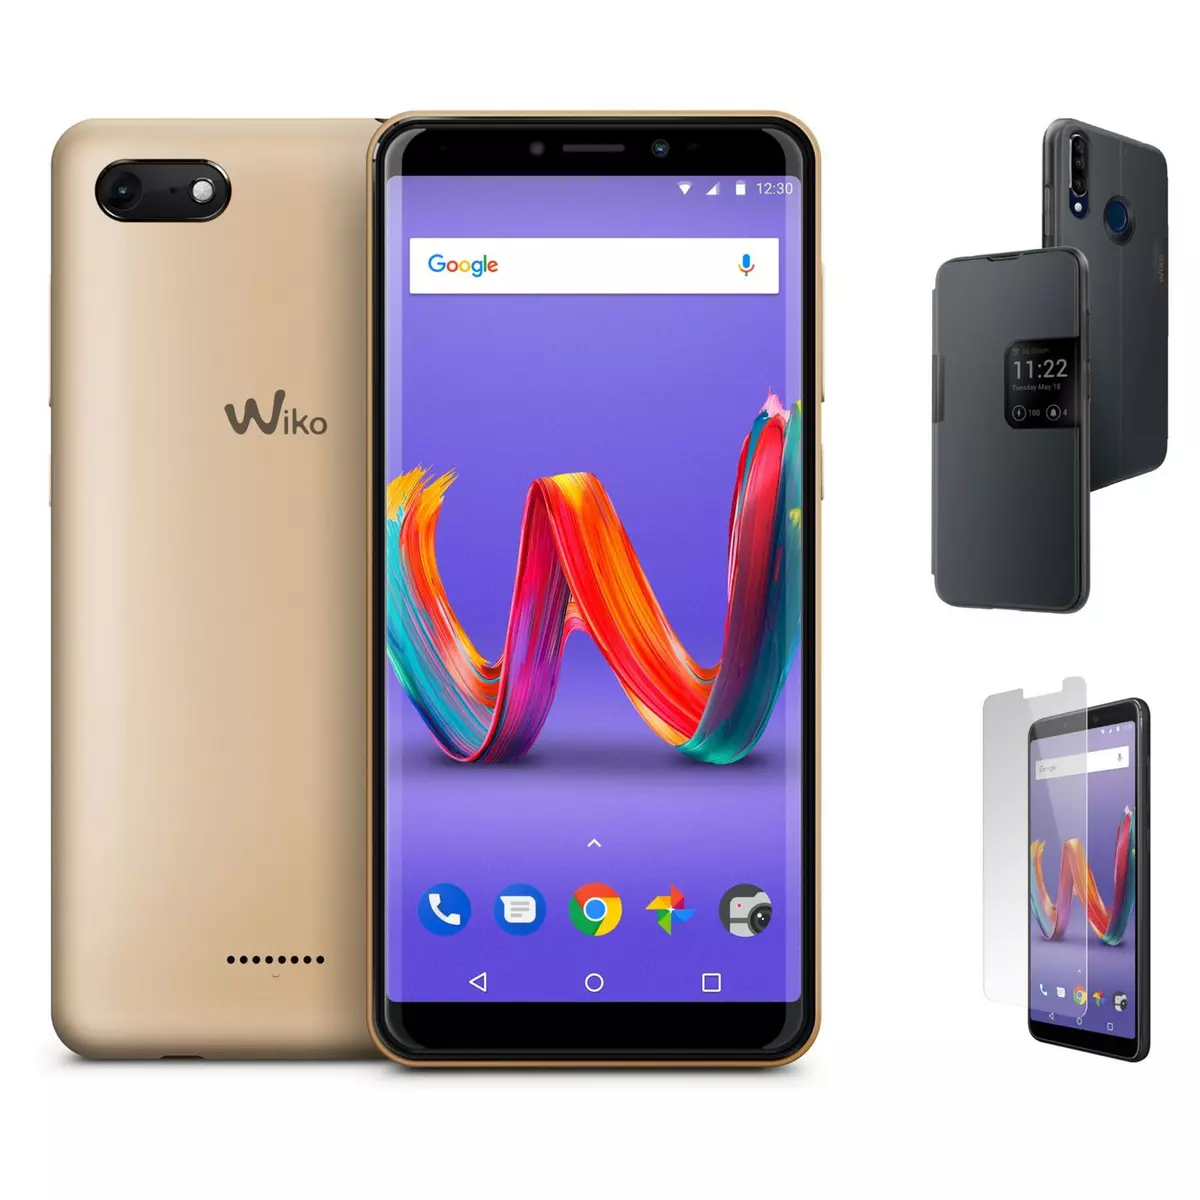 WIKO Pack Smartphone Harry2 Or 16 Go 5.45 pouces + Étui à rabat smart folio gris + Protection écran verre trempé